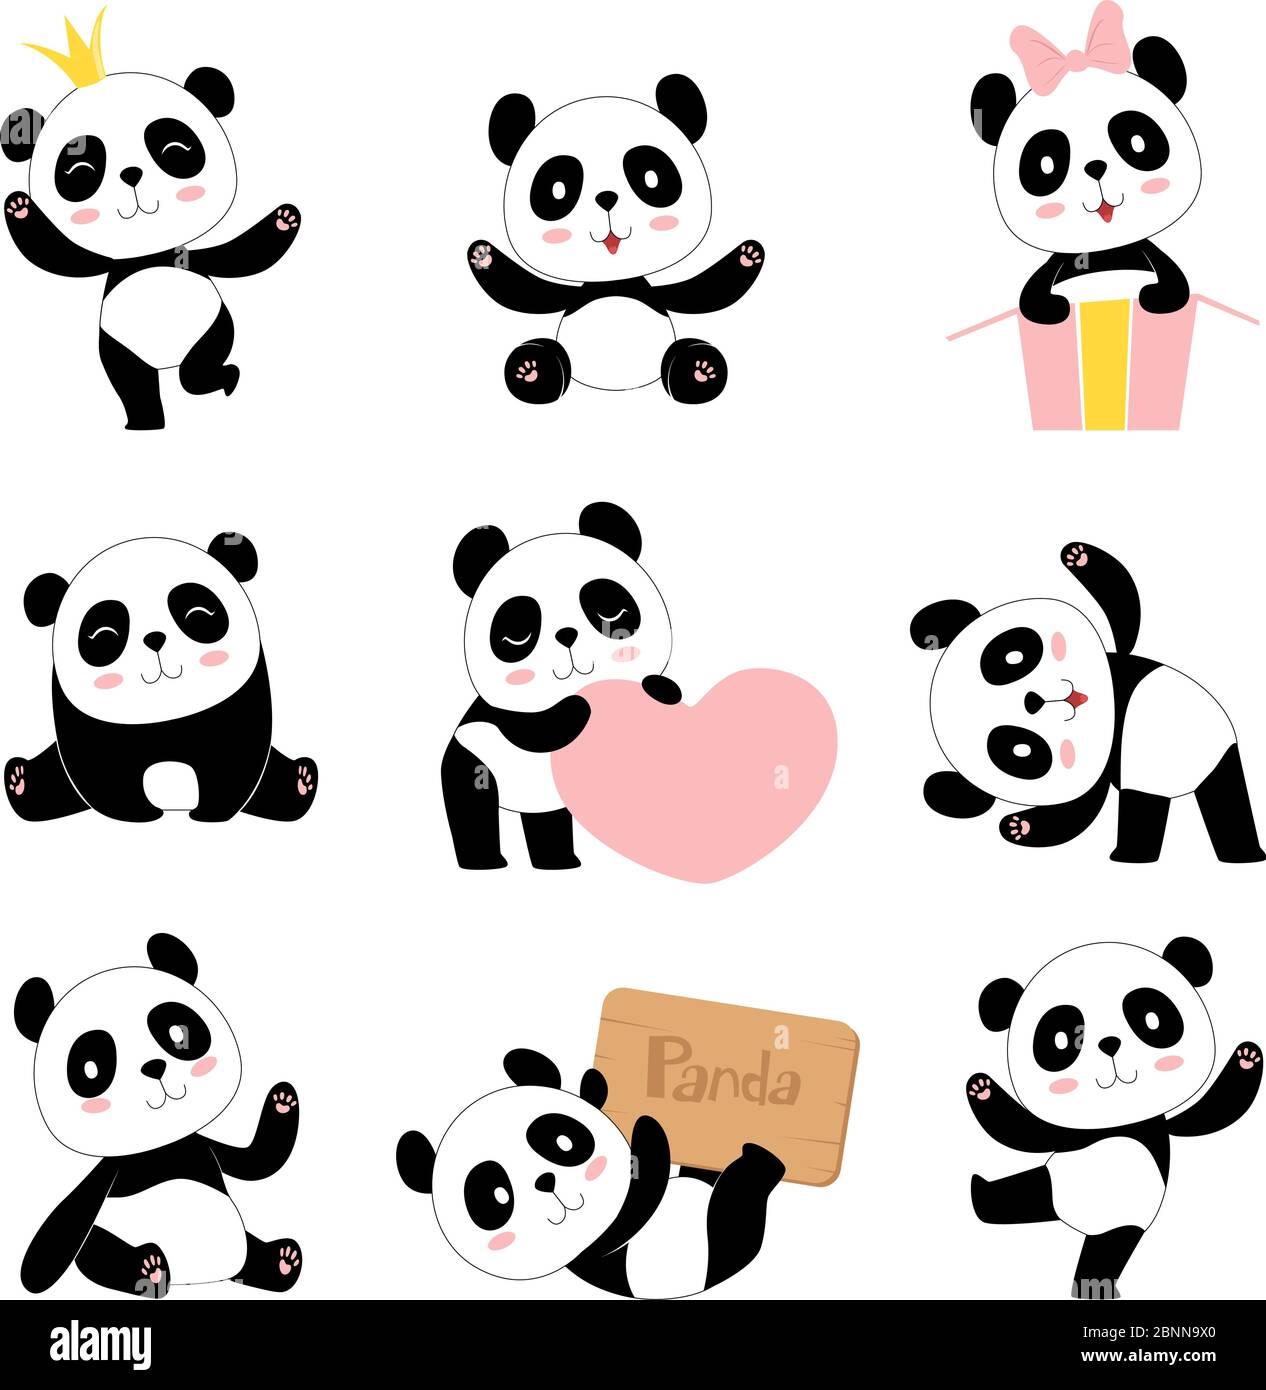 Niedliche Pandas. Spielzeug Tiere chinesische Symbole Panda tragen liebenswert lustig Baby Maskottchen Vektor-Charaktere Sammlung im Cartoon-Stil Stock Vektor